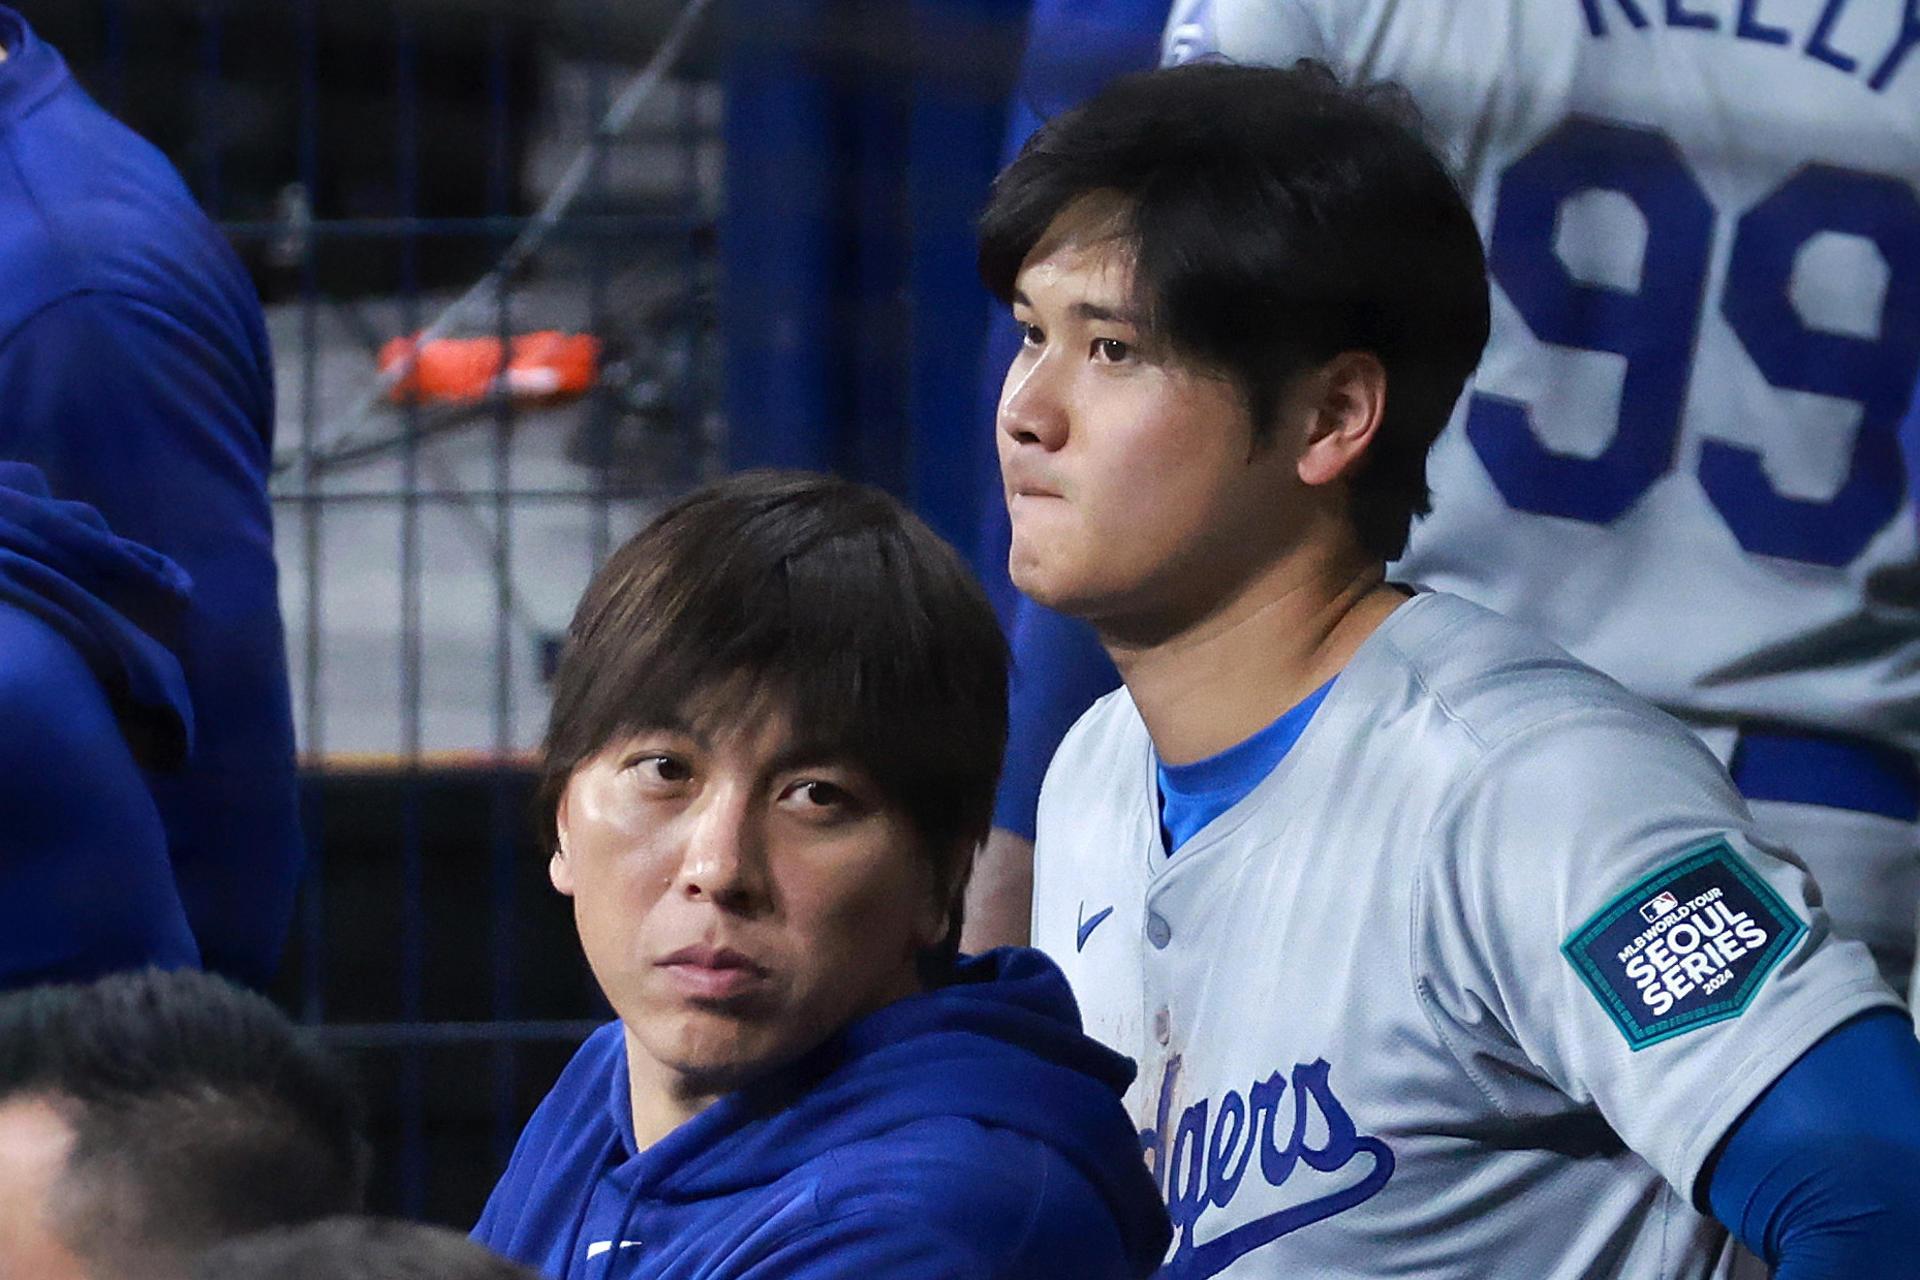 Intéprete de Shohei Ohtani se entrega a las autoridades tras fraude bancario al pelotero de los Dodgers de Los Ángeles. Noticias en tiempo real